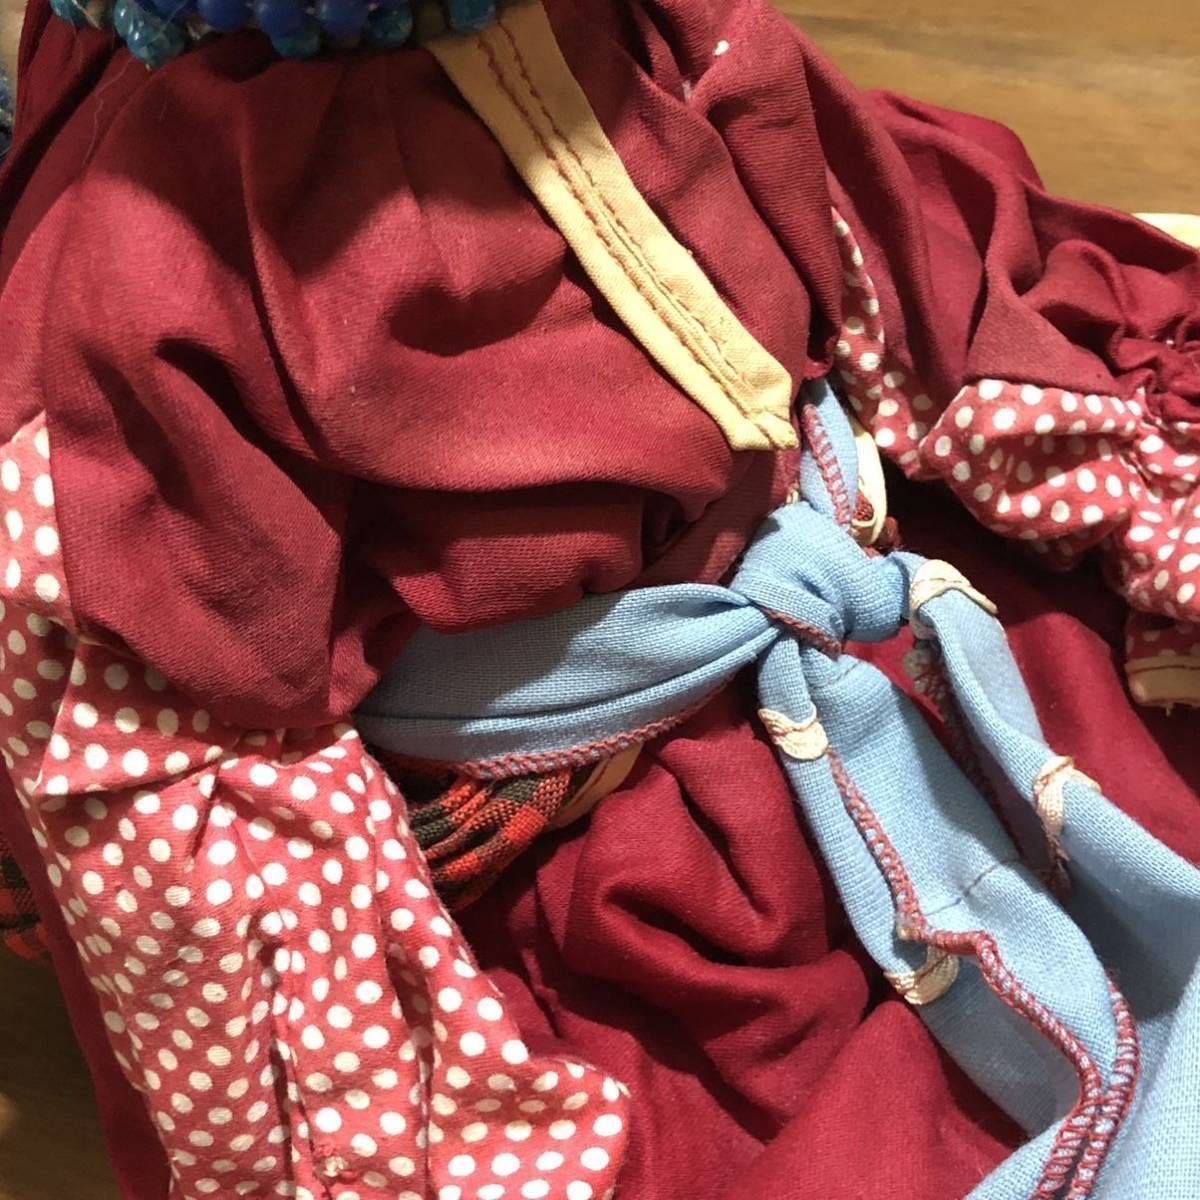 【即決/送料無料】 VINTAGE BERIOZKA DOLL ベリョースカ人形 スリープアイ人形 ビンテージドール 年代物中古 海外雑貨 インテリア_画像7